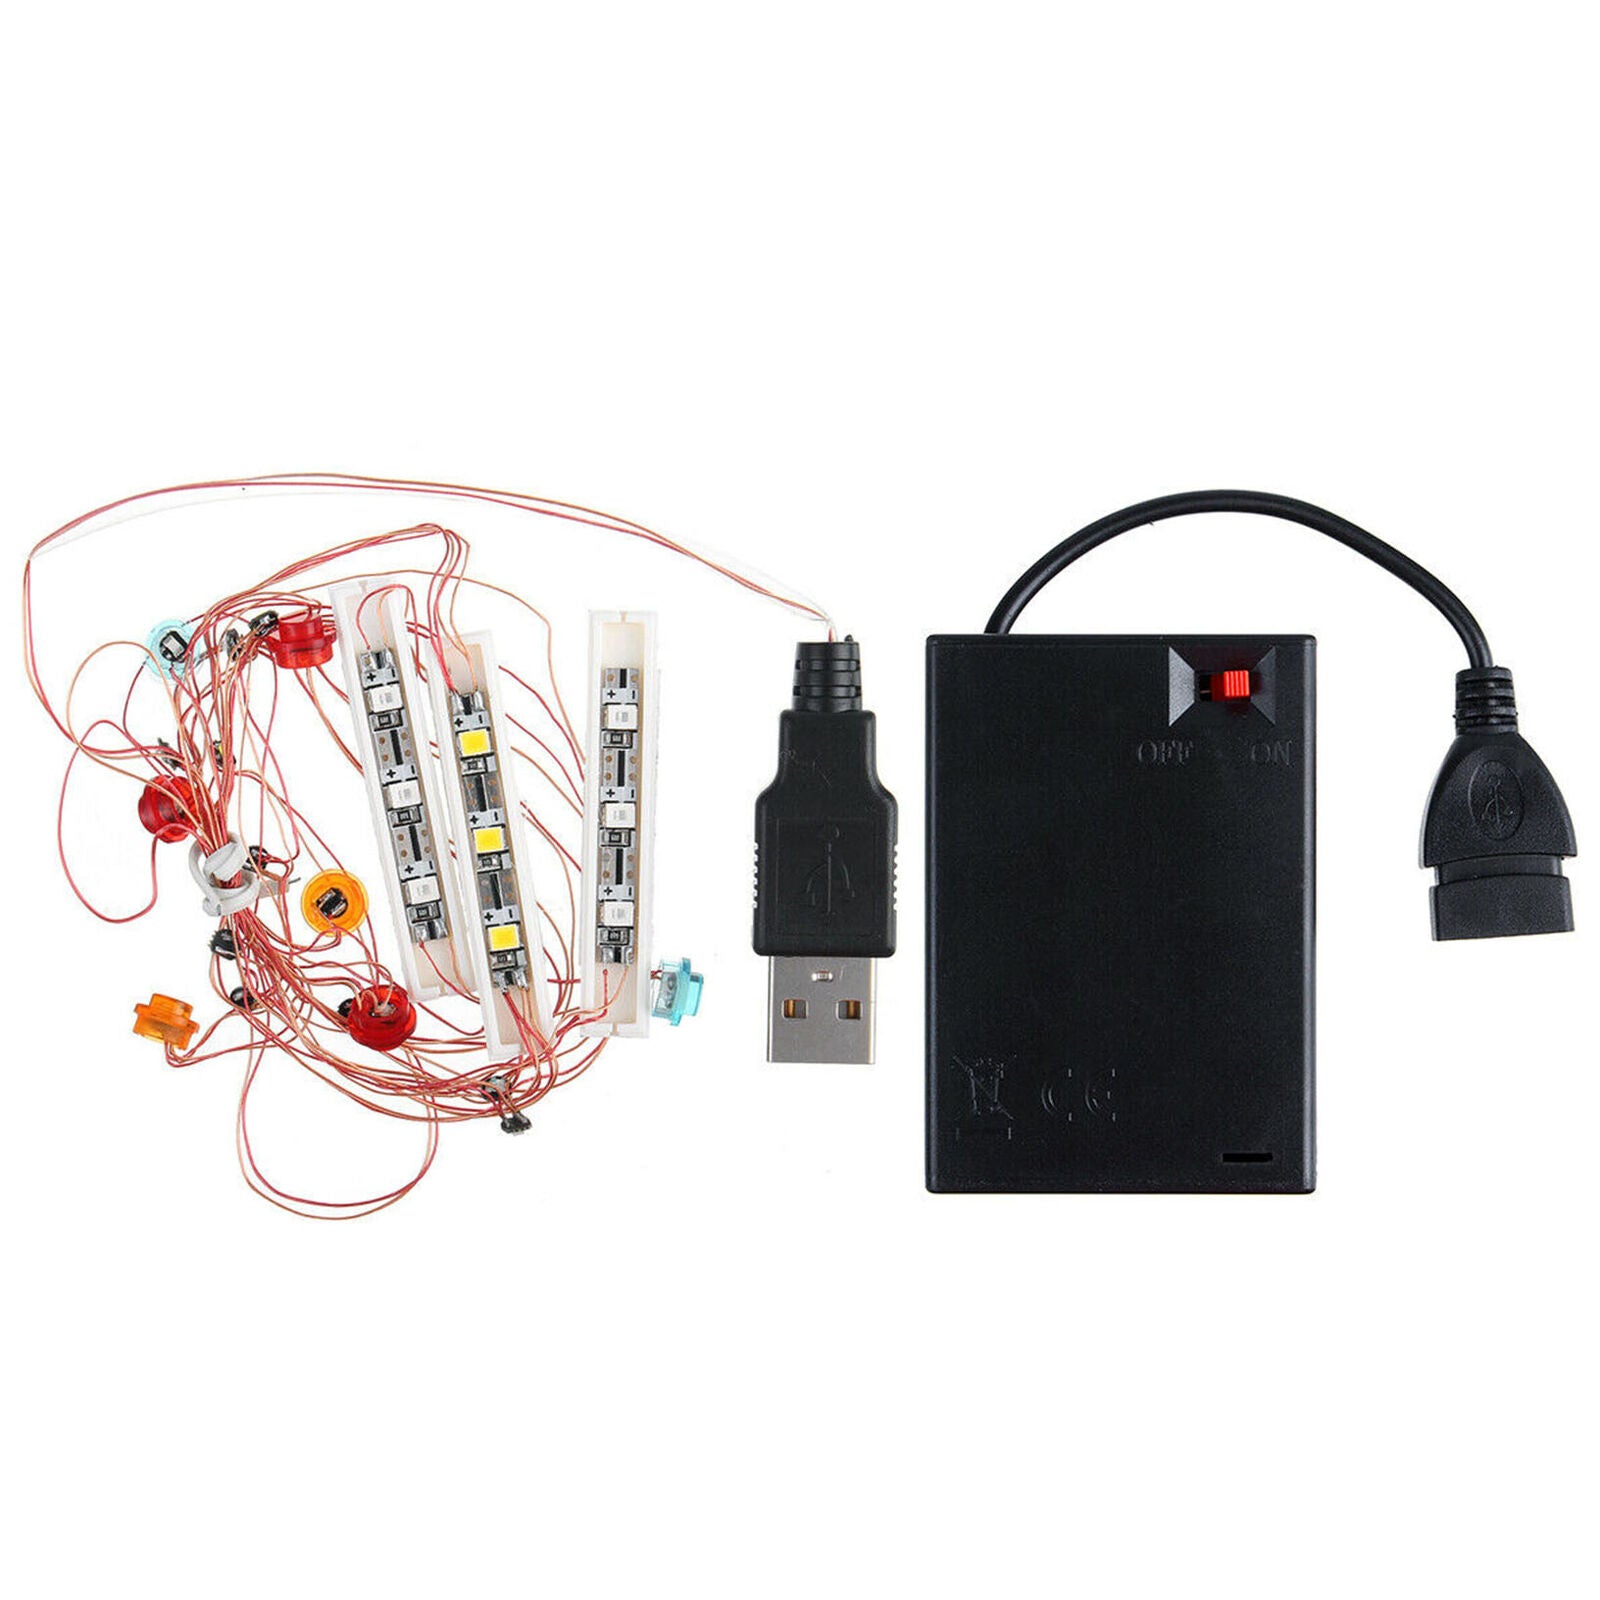 42111 Technic Doms For Dodge Charger Bricks USB LED Light Lighting Kit